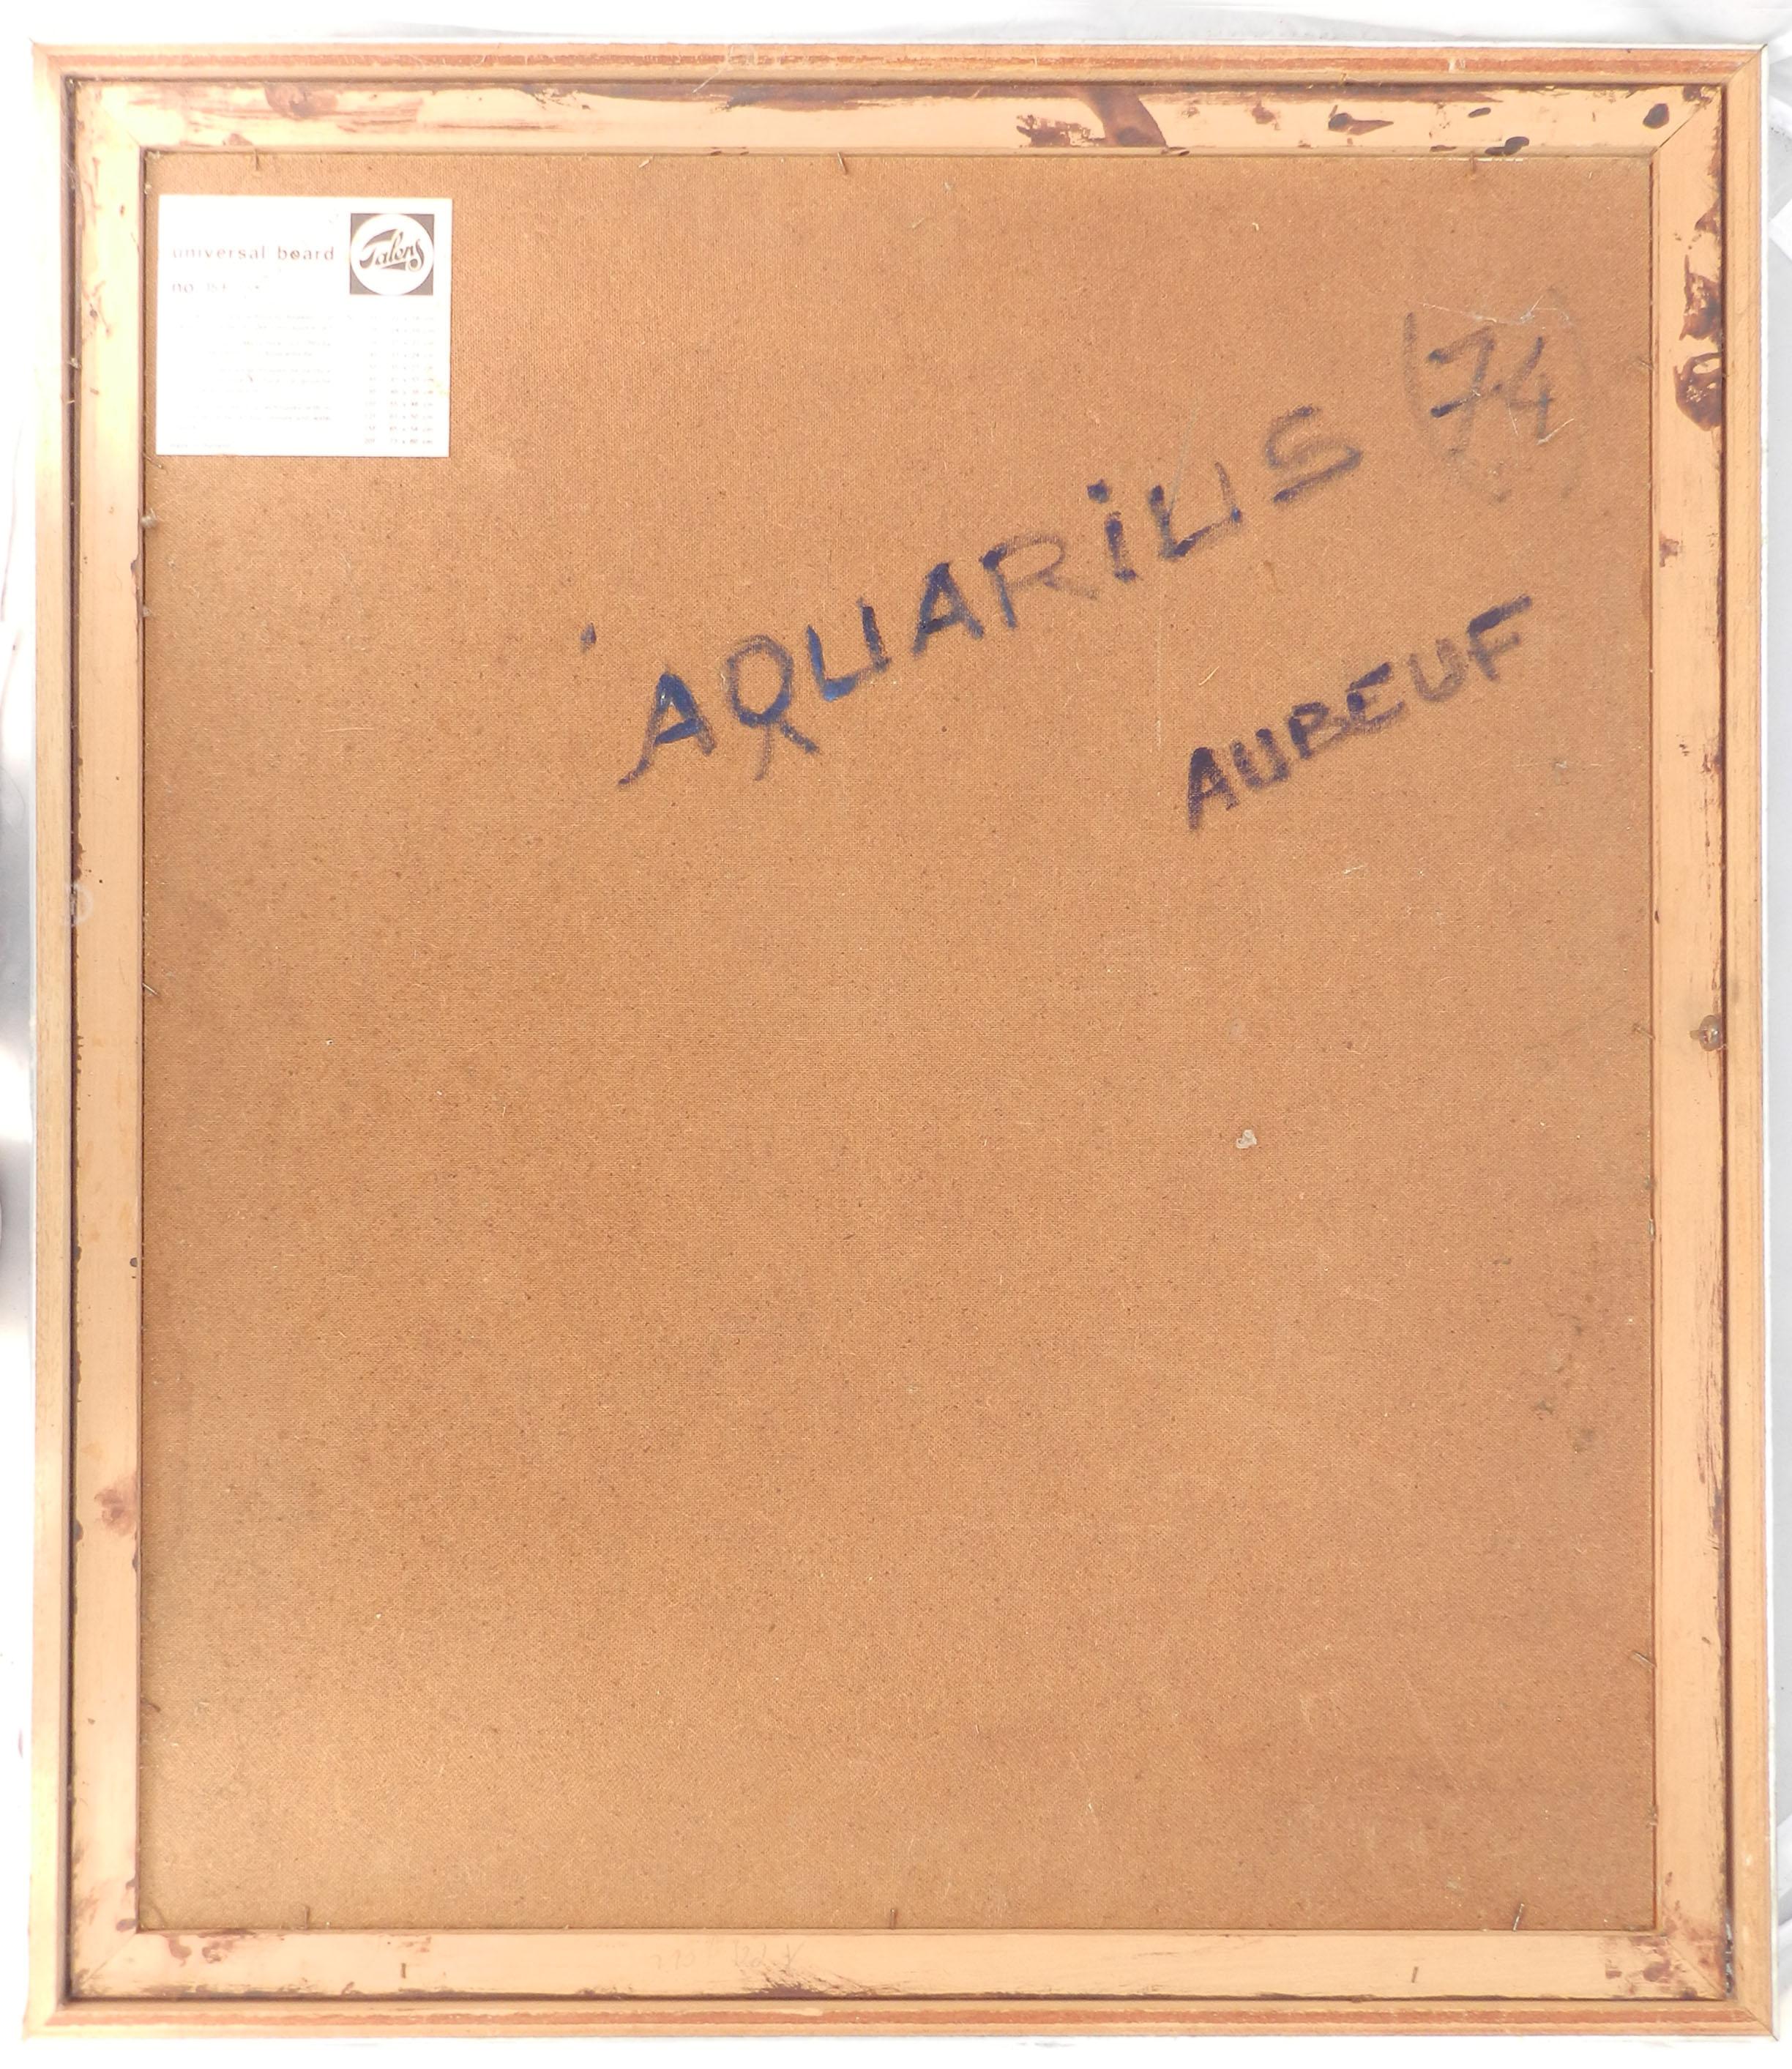 Aquarius by Aubeuf Oil Painting 1974 3